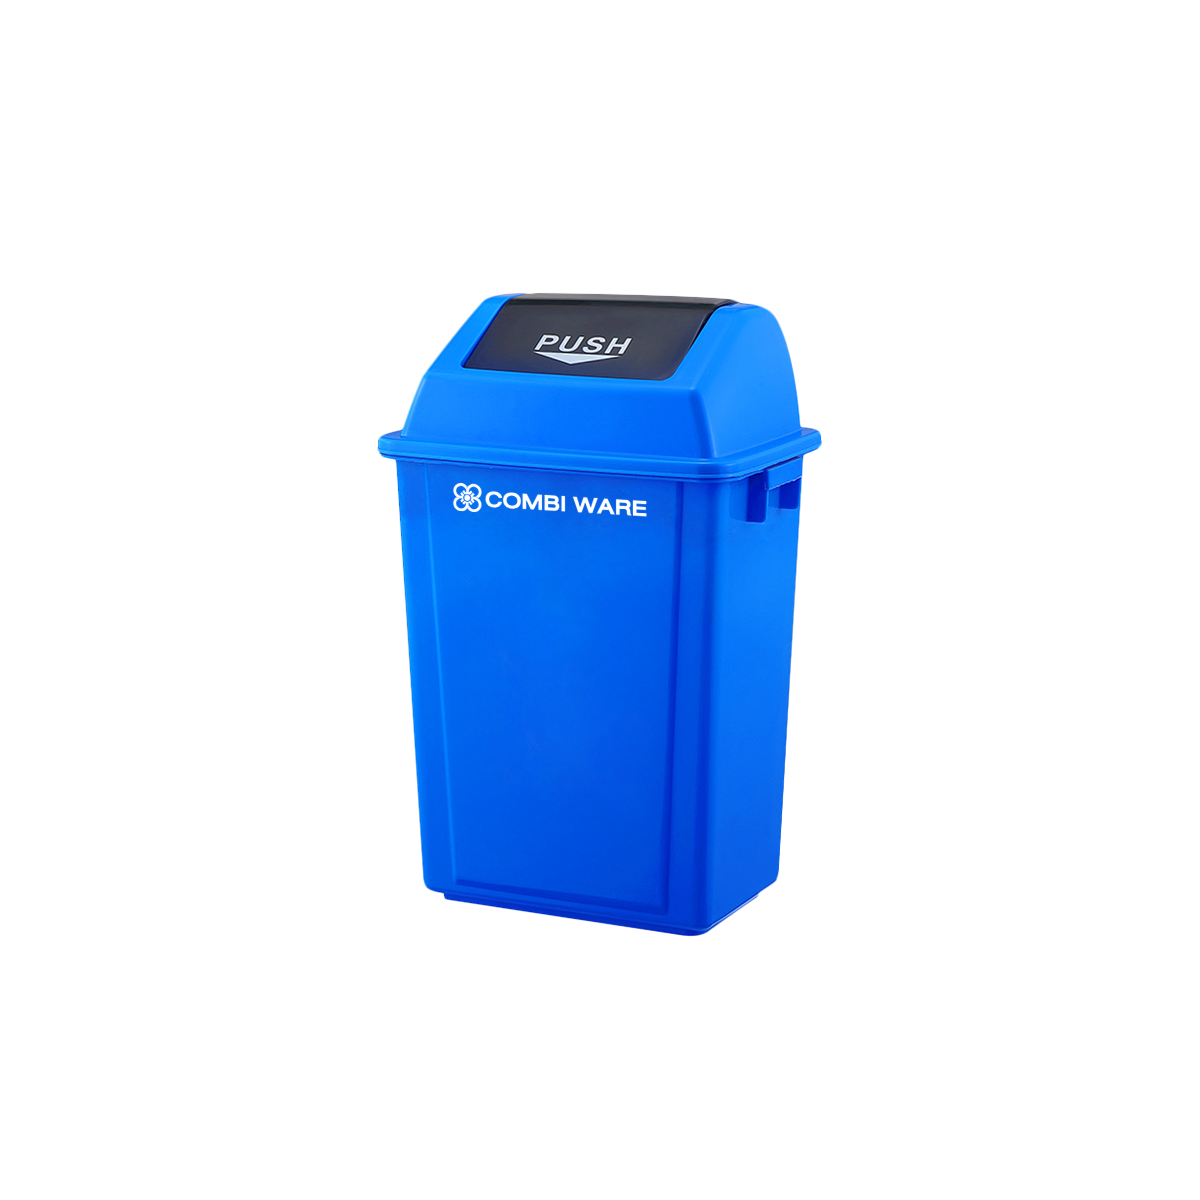 ถังขยะพลาสติก แบบฝาผลัก ขนาด 20 ลิตร สีน้ำเงิน